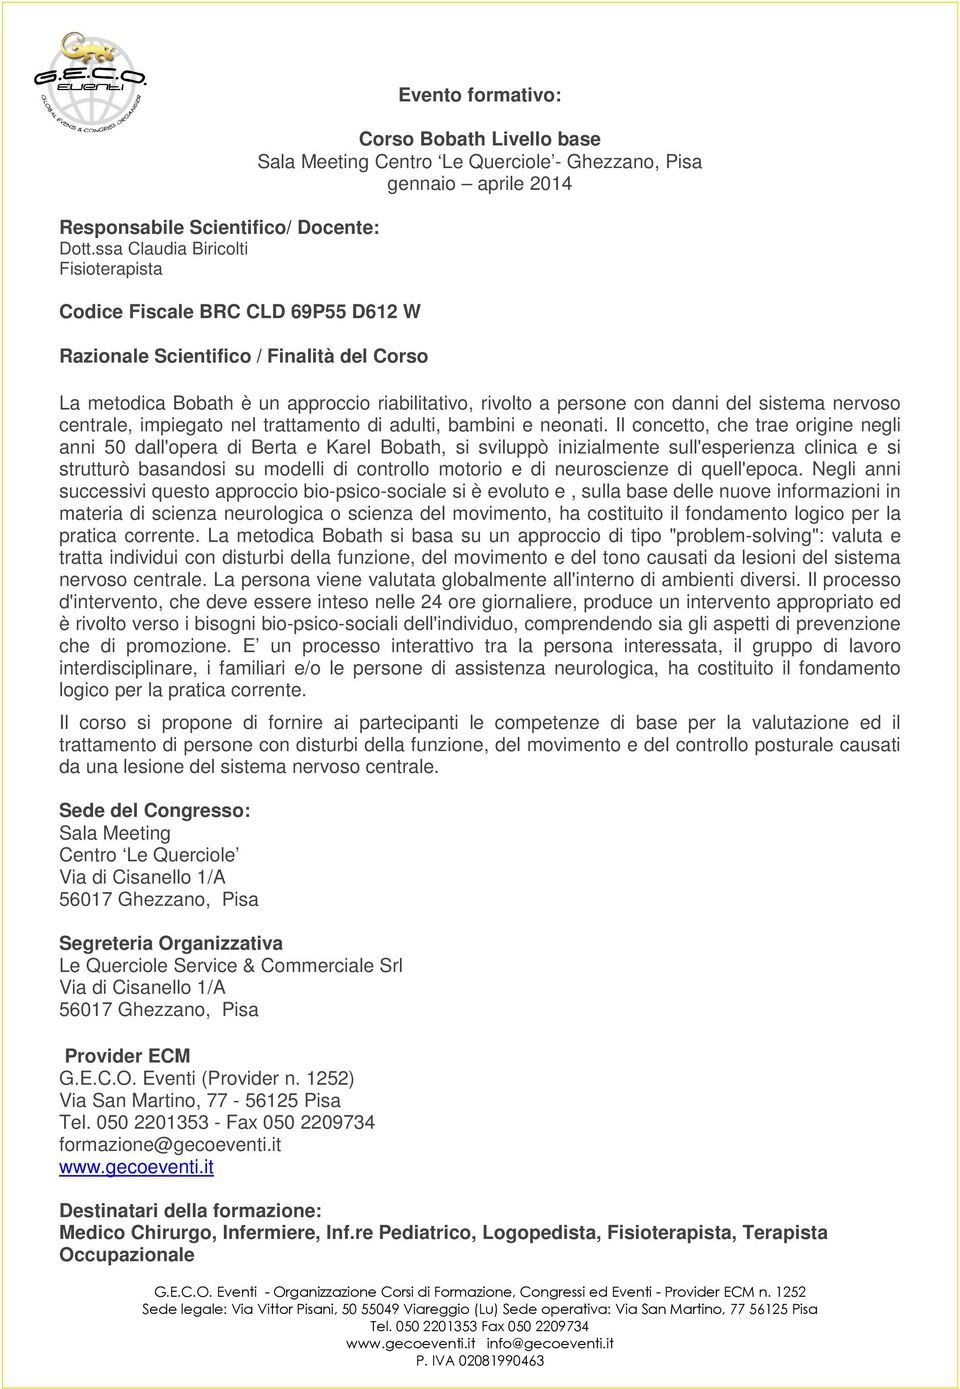 Ghezzano, Pisa gennaio aprile 2014 La metodica Bobath è un approccio riabilitativo, rivolto a persone con danni del sistema nervoso centrale, impiegato nel trattamento di adulti, bambini e neonati.